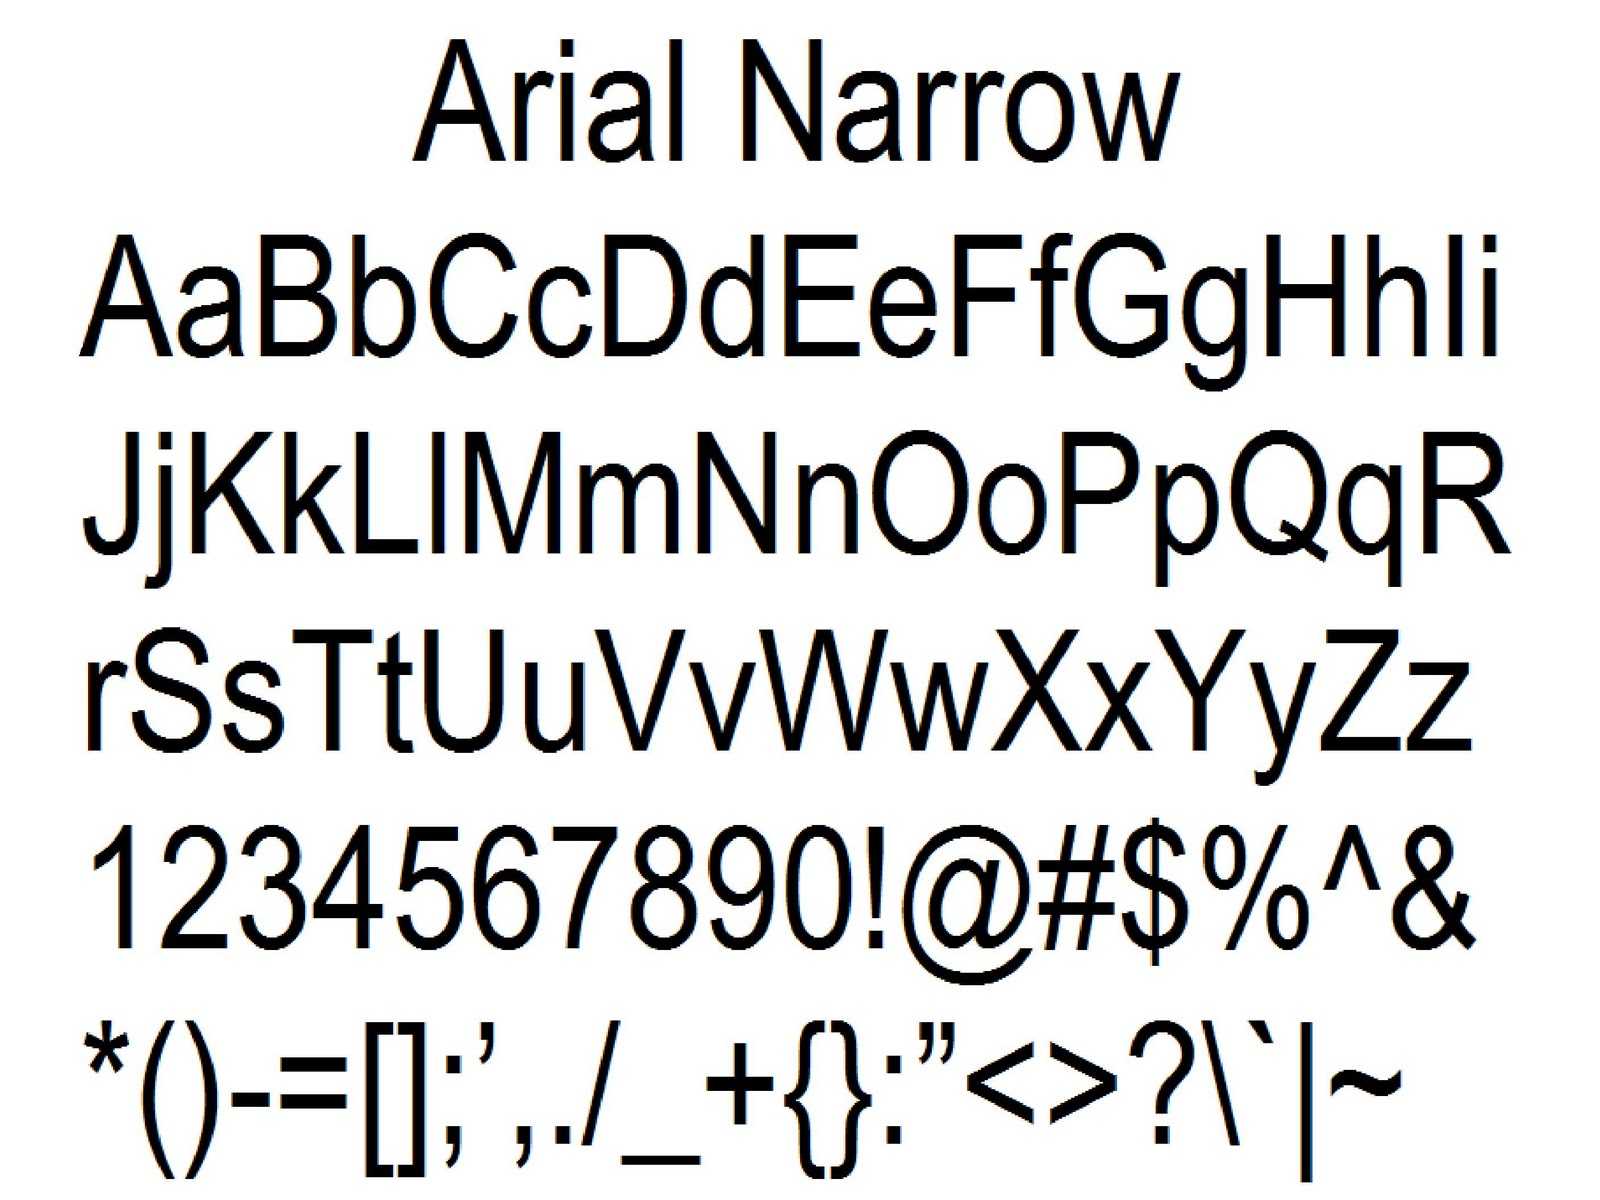 Шрифт arial narrow gras bold 700 скачать в форматах eot, otf, svg, ttf, woff, woff2, zip бесплатно для сайта